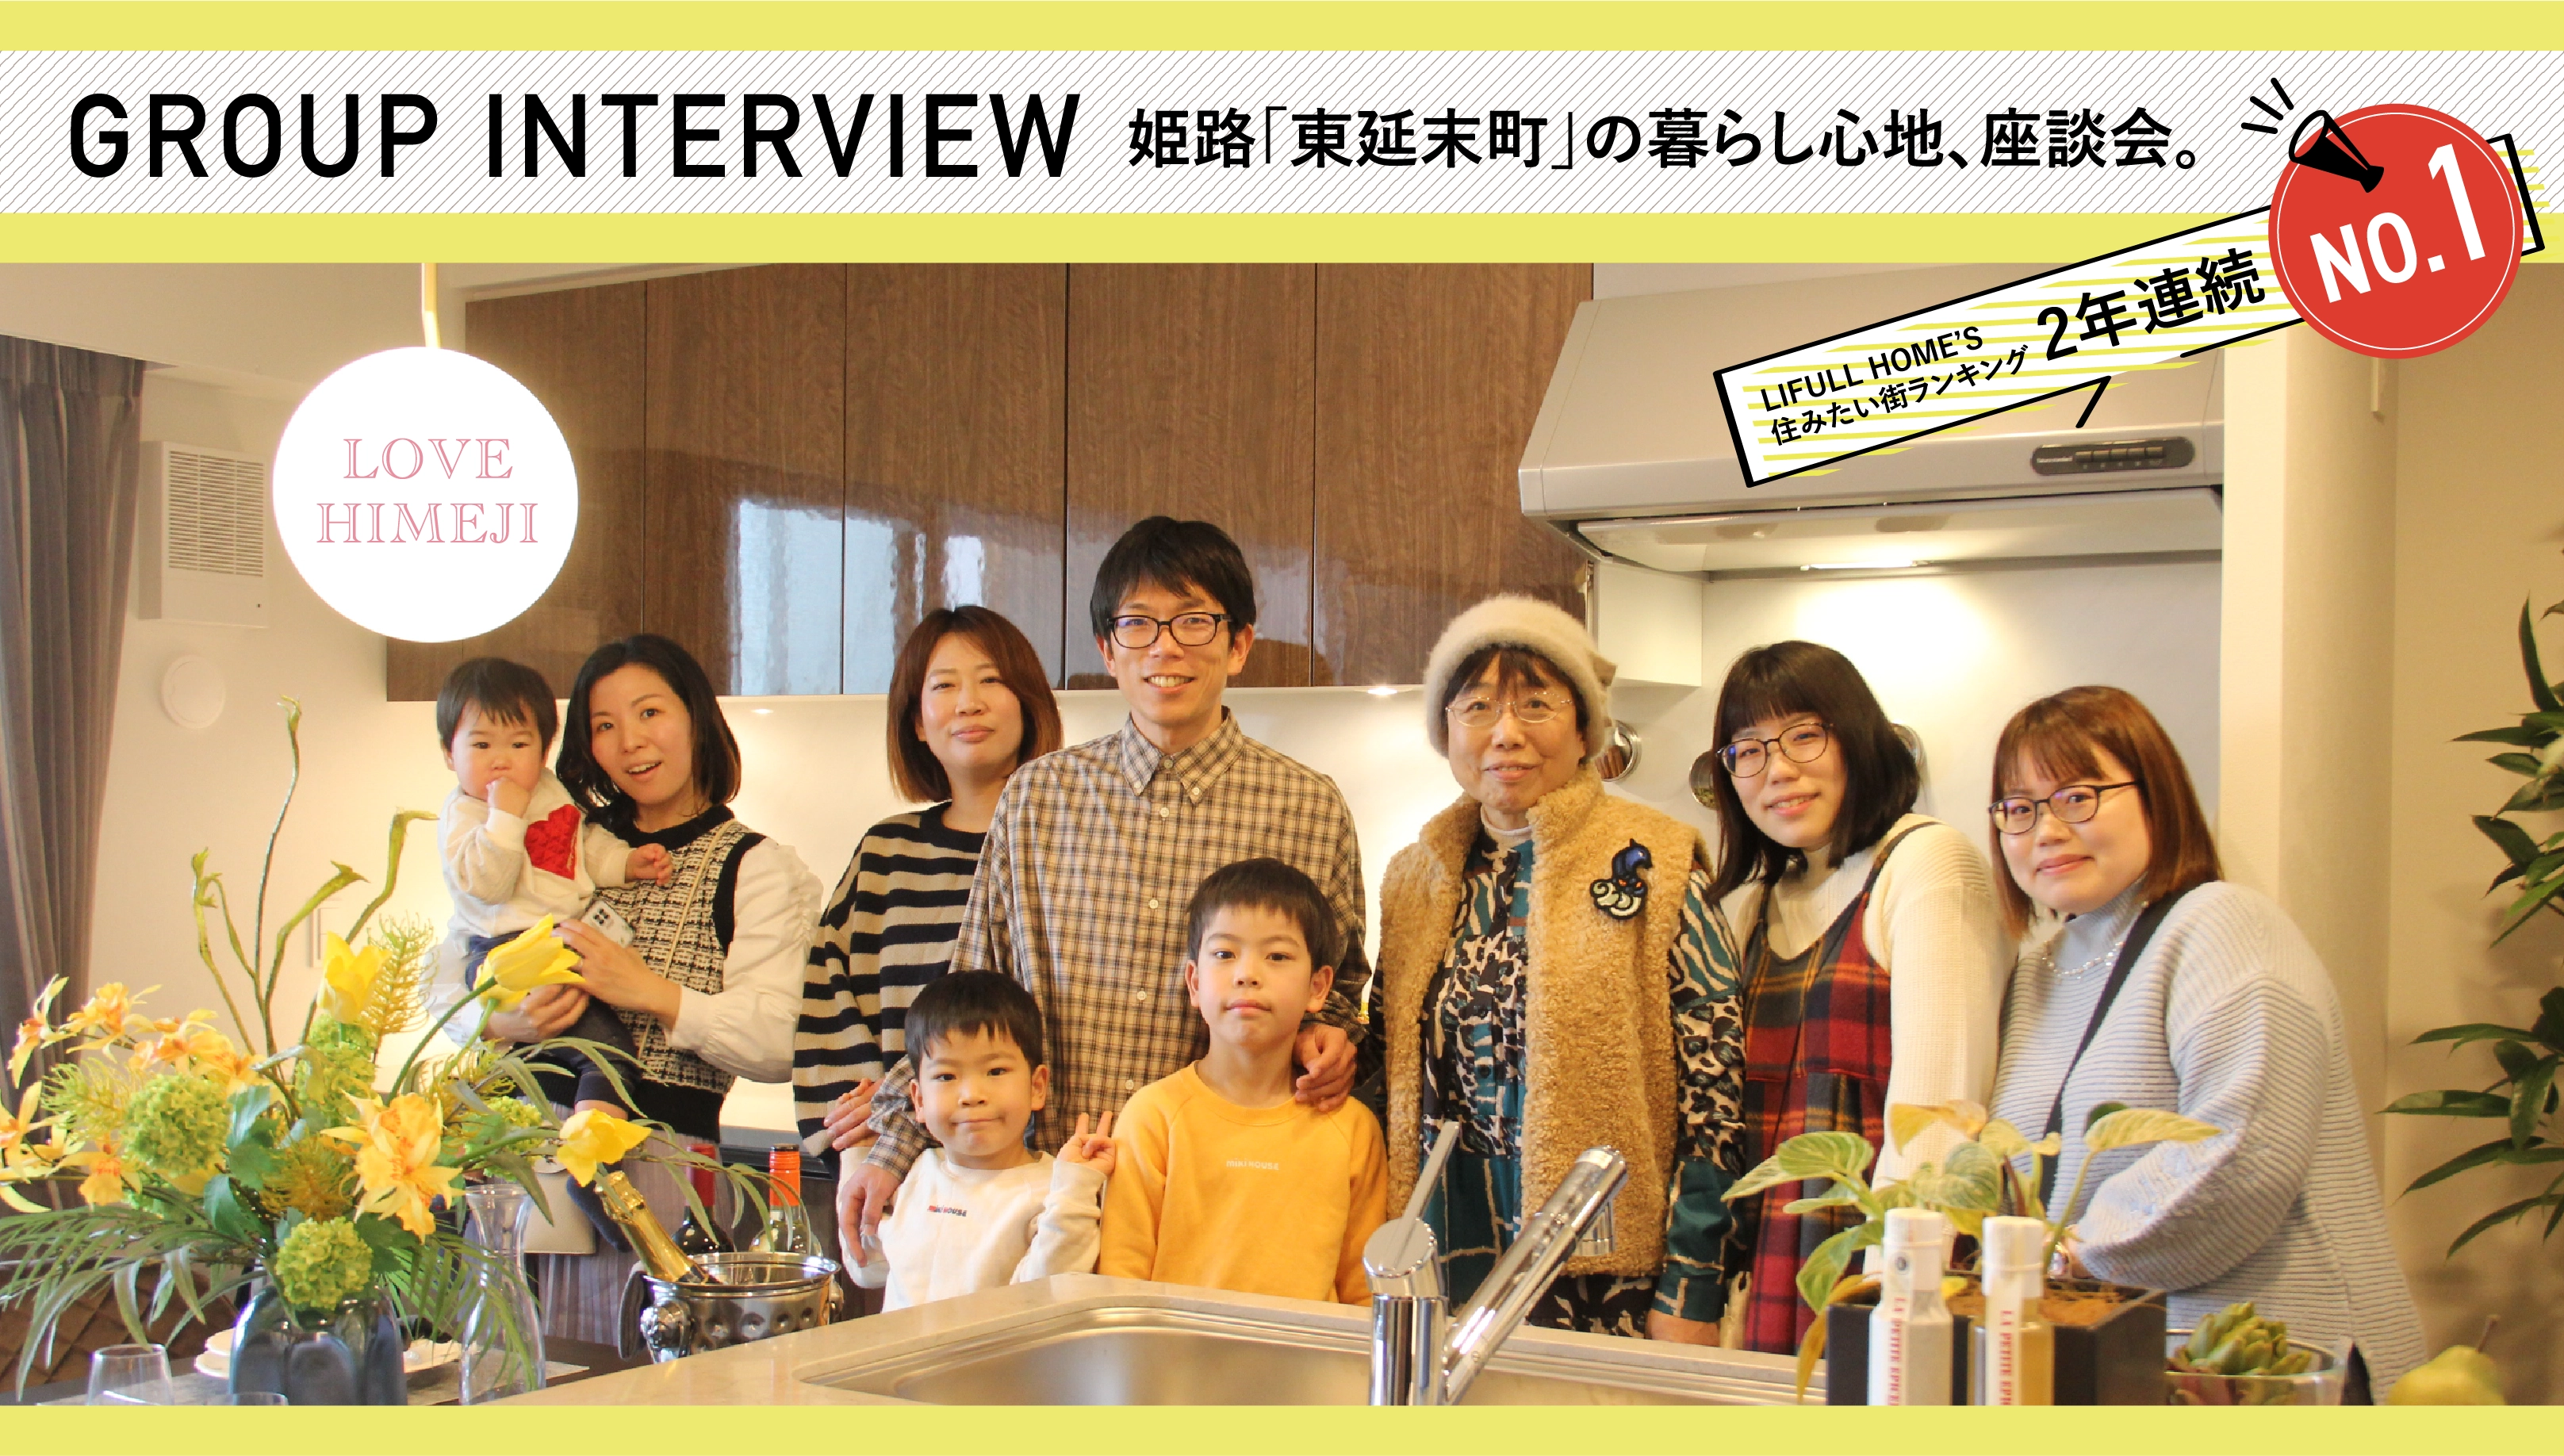 GROUP INTERVIEW 姫路「東延末町」の暮らし心地、座談会。